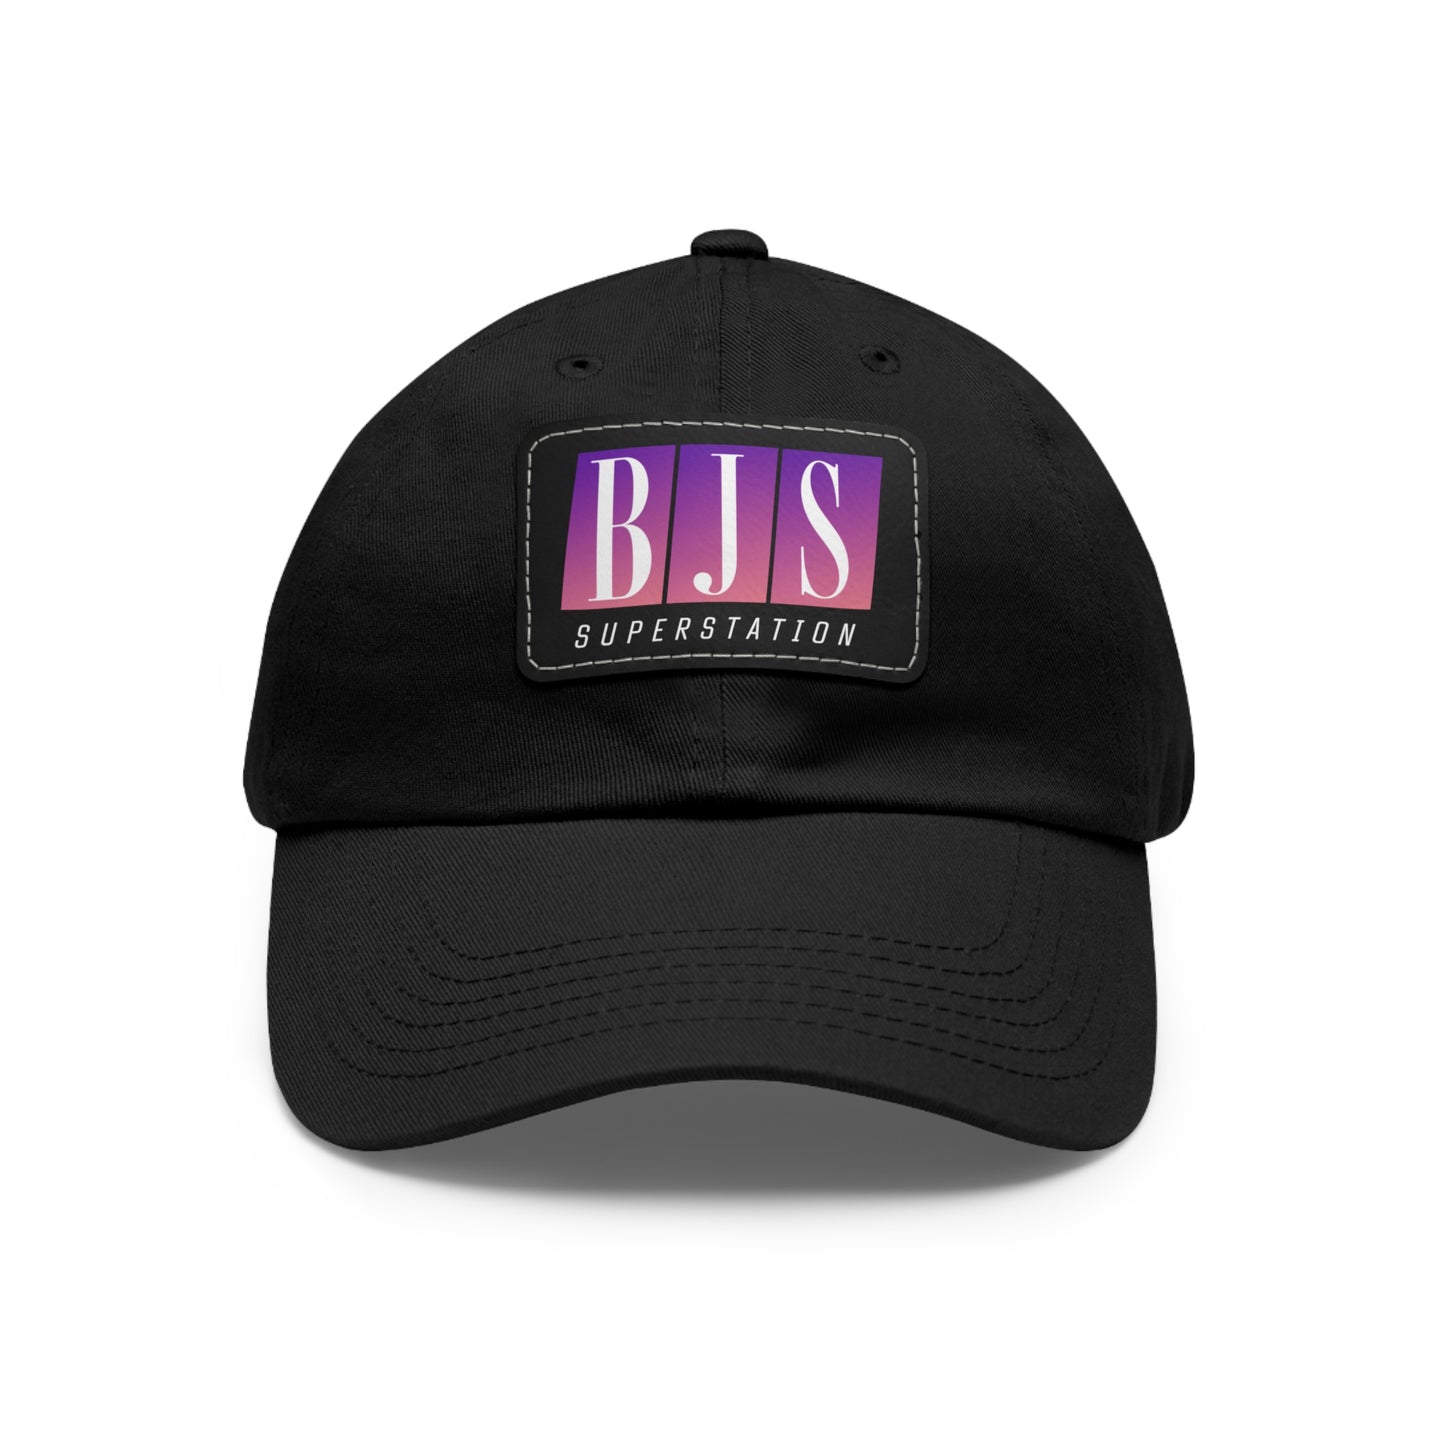 BJS Superstation Hat